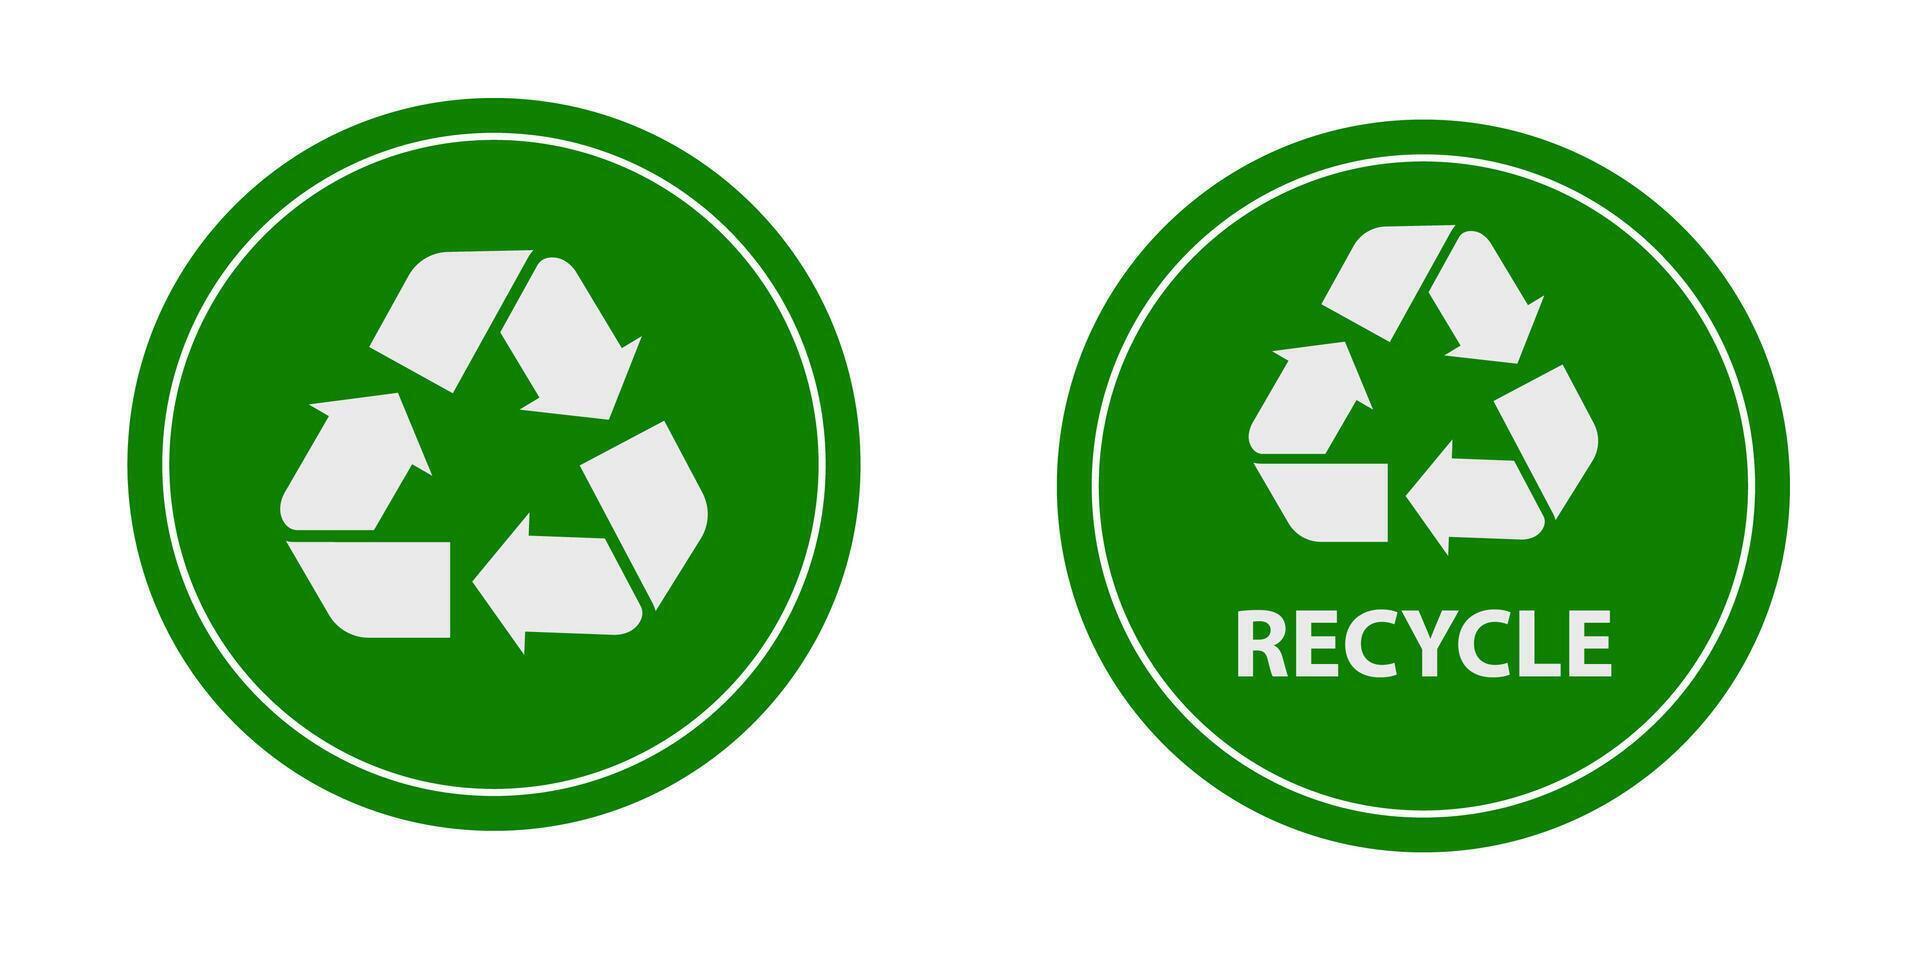 raccolta differenziata, riciclare, verde riciclare vettore